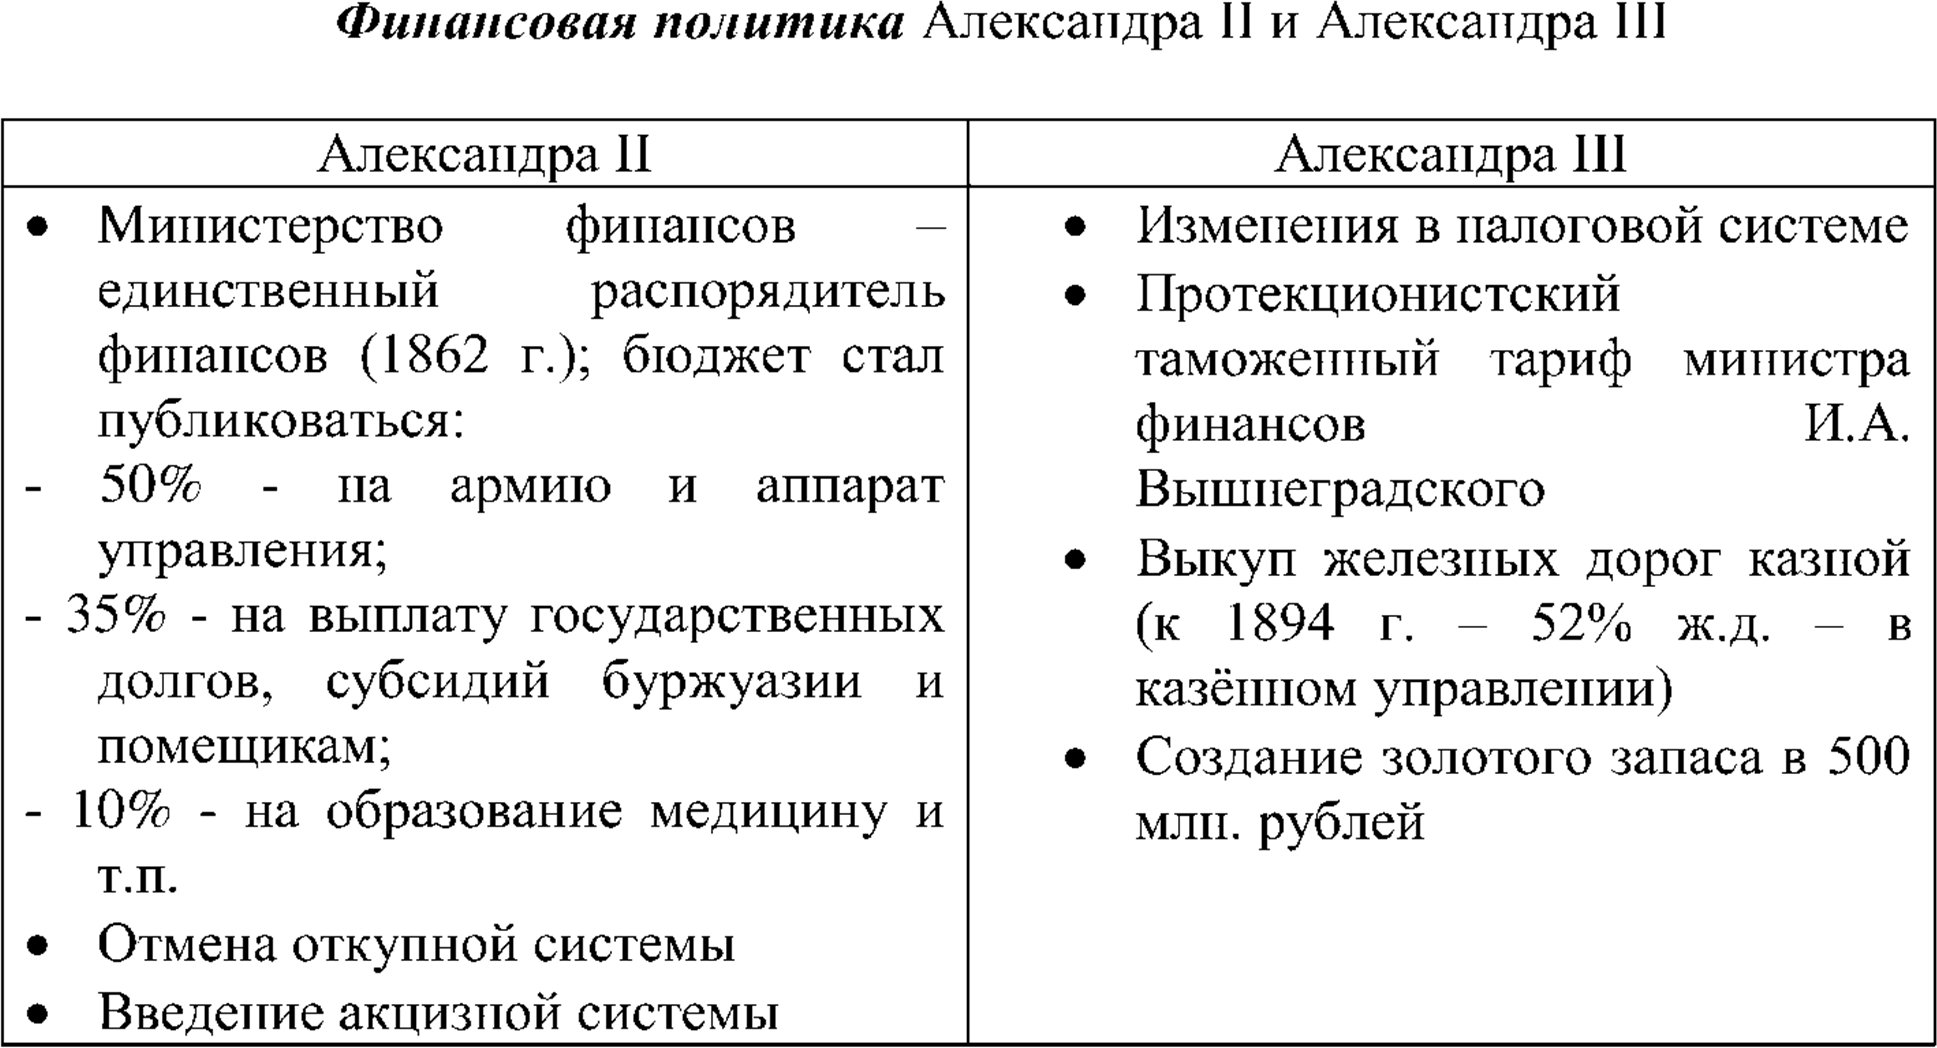 Финансовая политика Александра II и Александра III